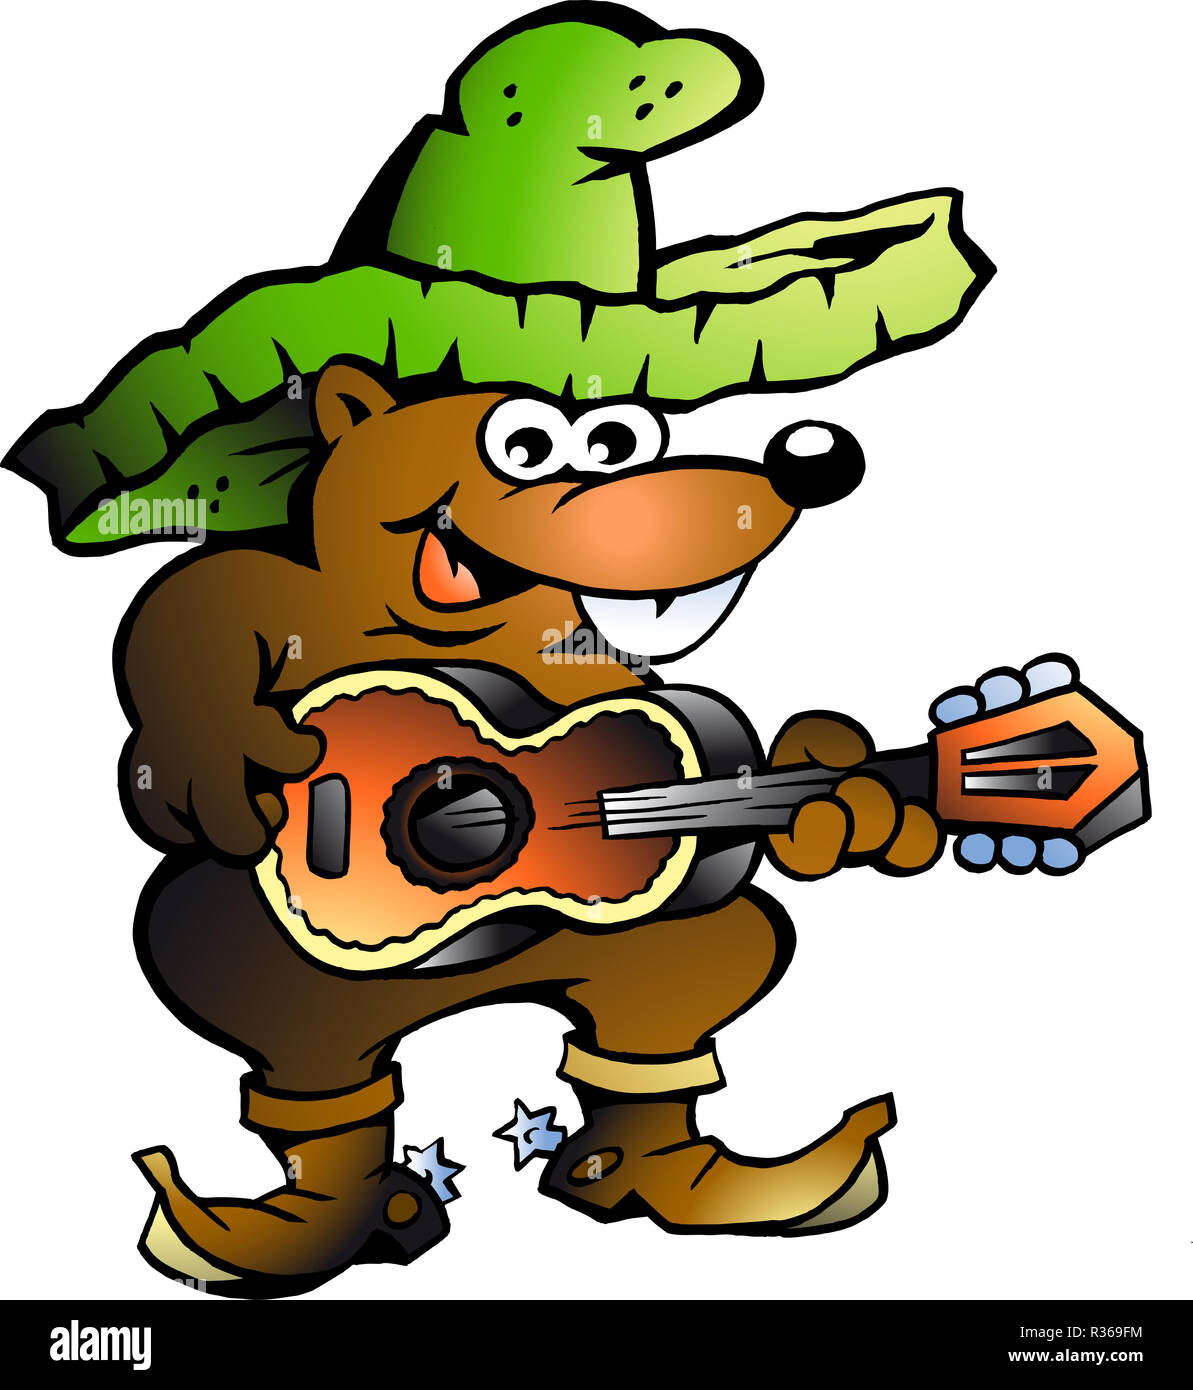 Vector illustration dessinée à la main d'un wallaby mexicain qui joue de la guitare Banque D'Images